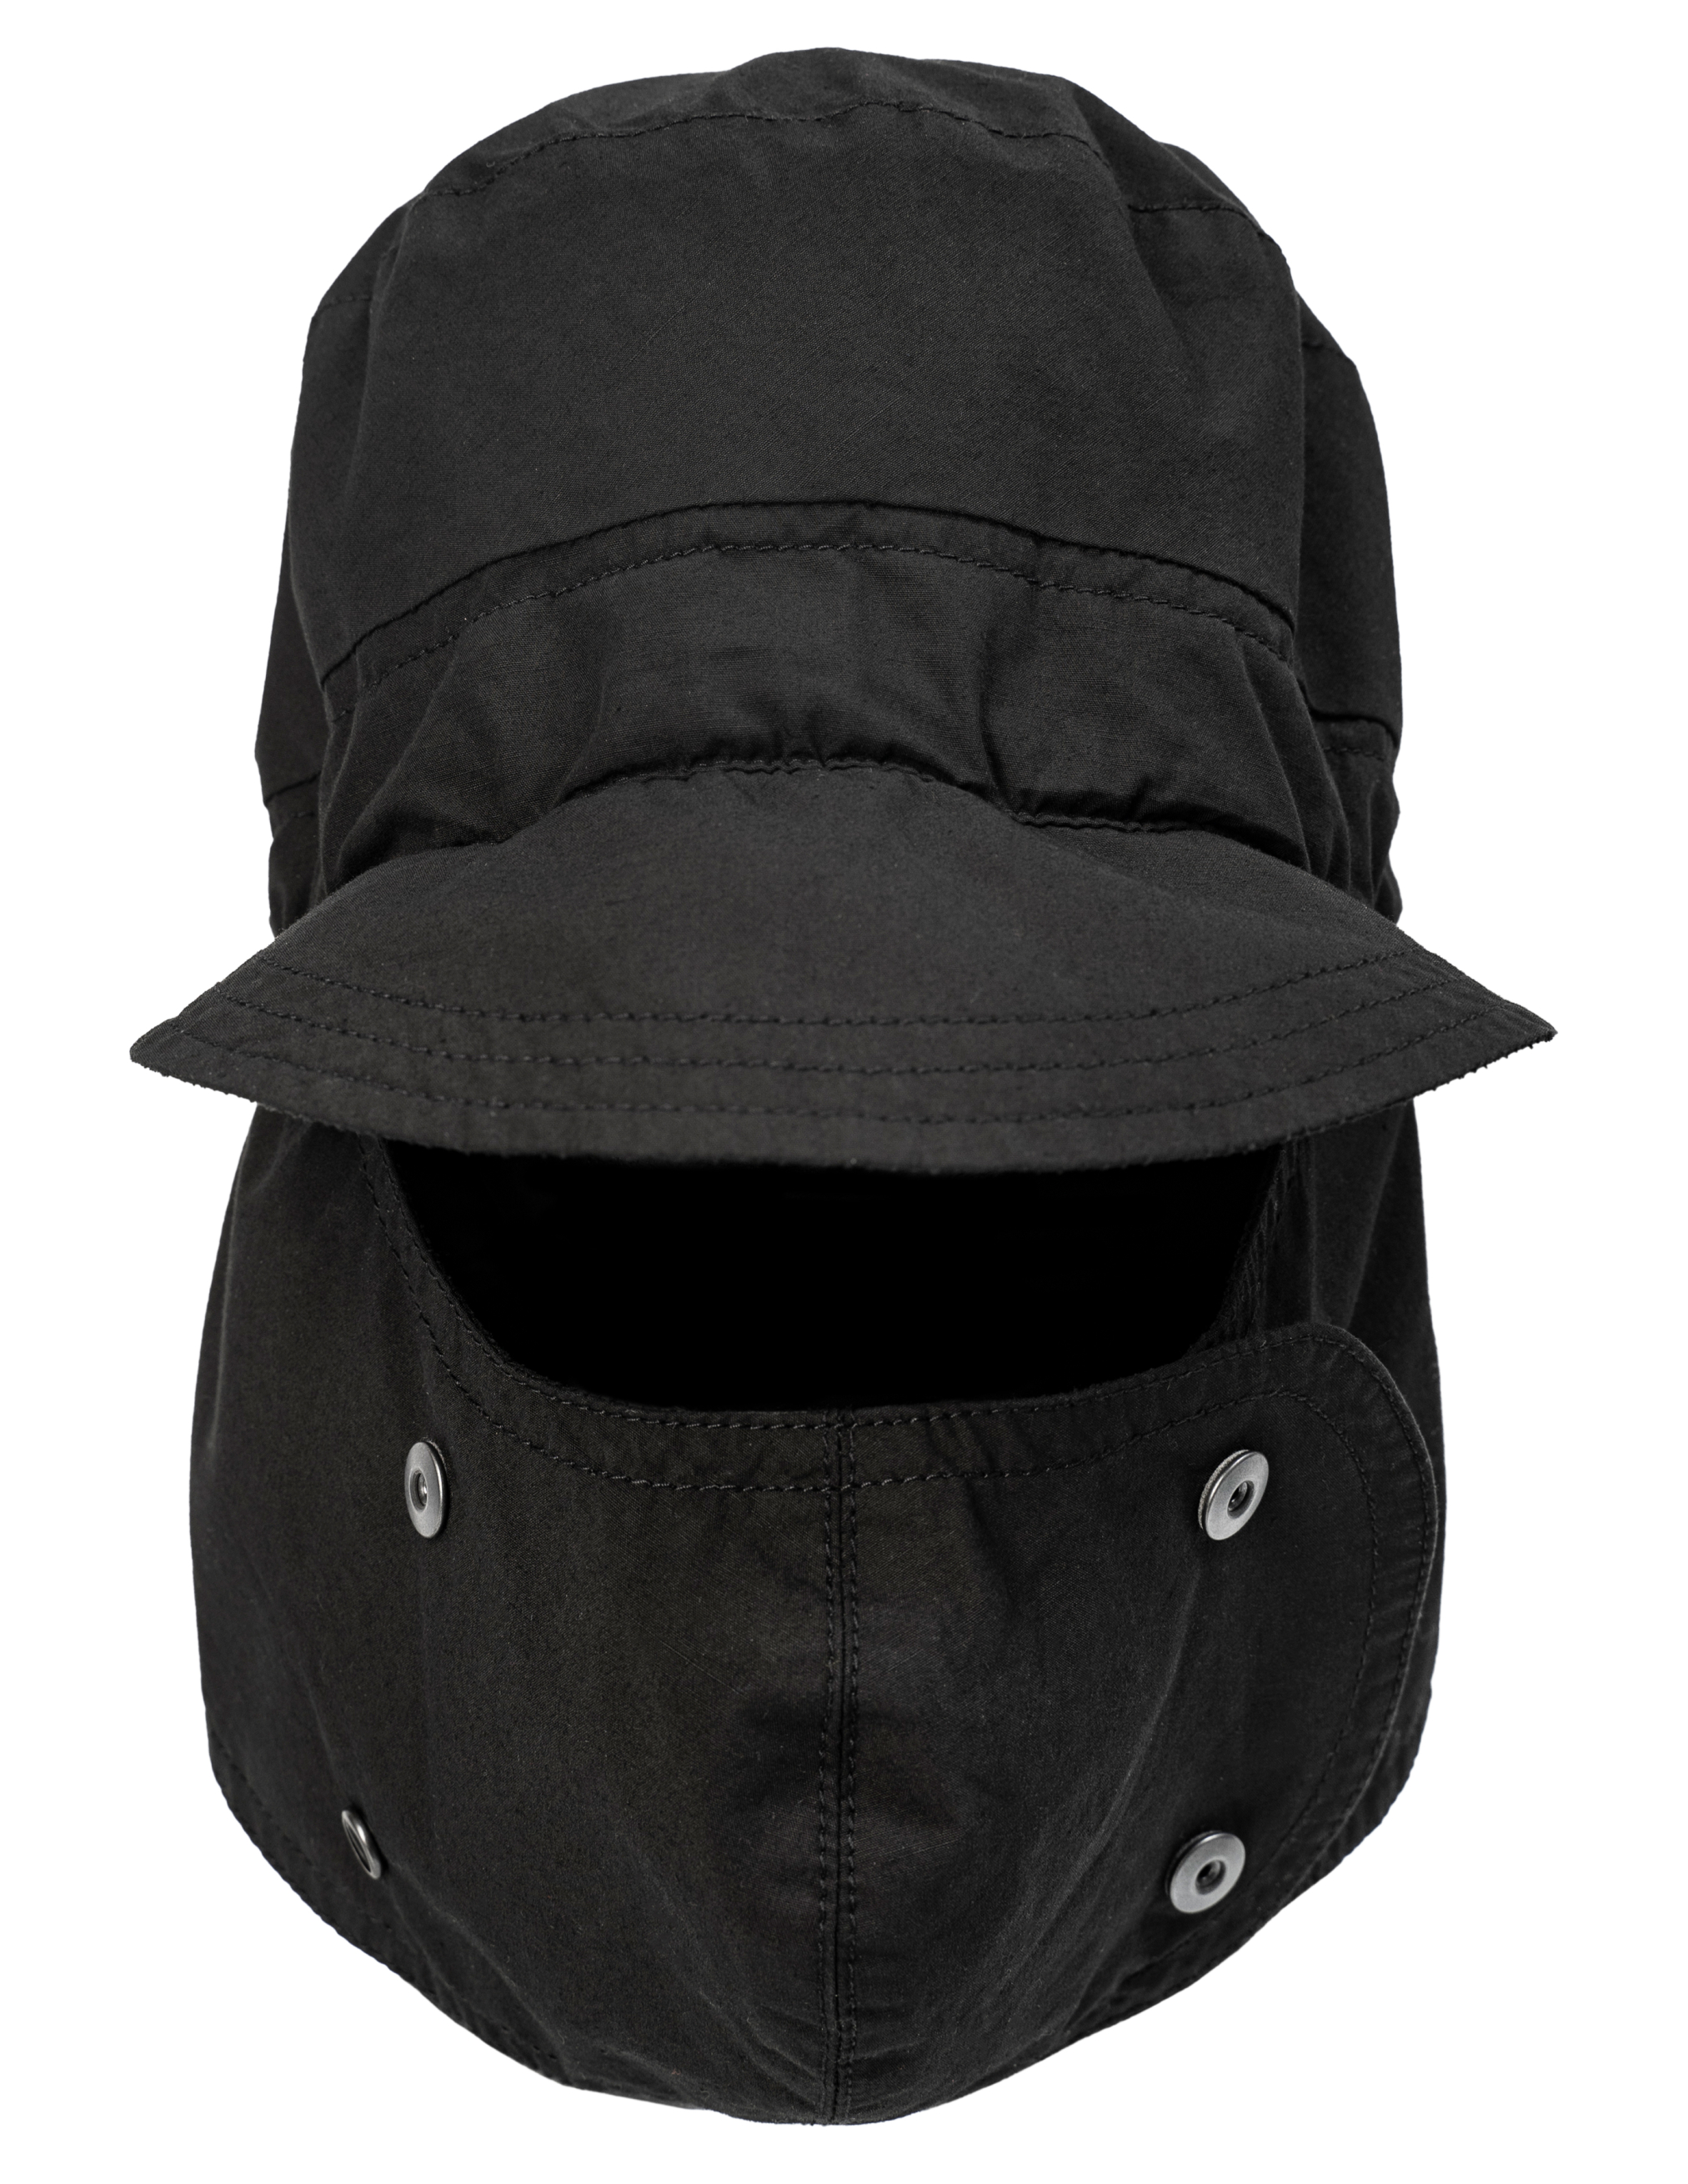 Черная шапка-маска на кнопках The Viridi-Anne VI/3501/09/blk, размер One Size VI/3501/09/blk - фото 1